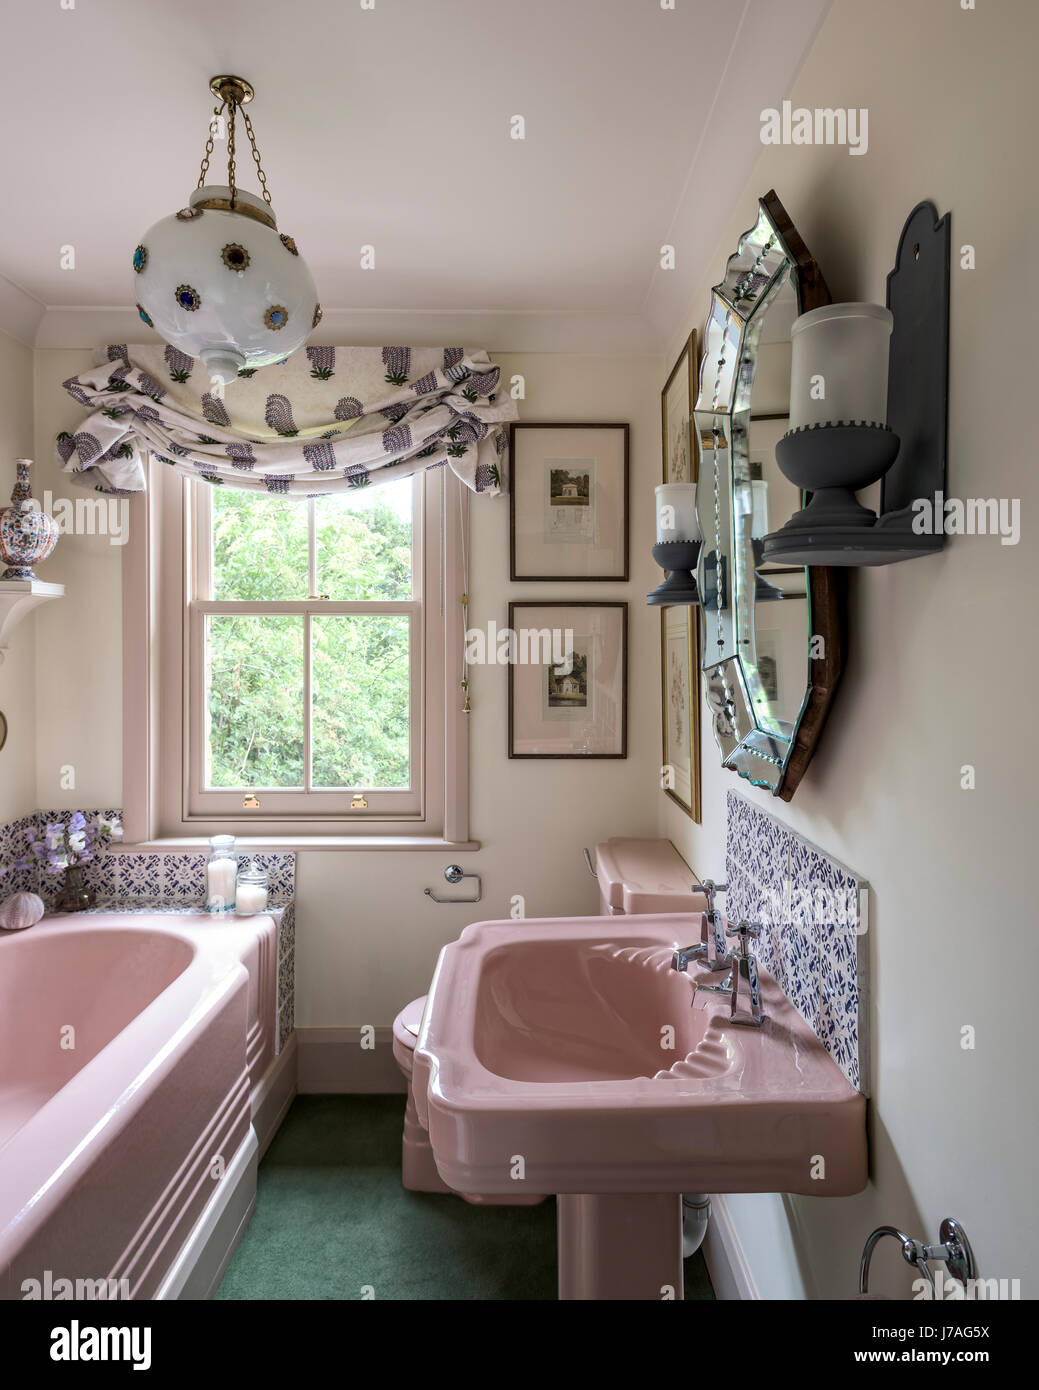 Rosa emailliertem Gusseisen Badewanne und Waschbecken im Bad mit Fired Earth Fliesen und reich verzierte vergoldete Spiegel Stockfoto